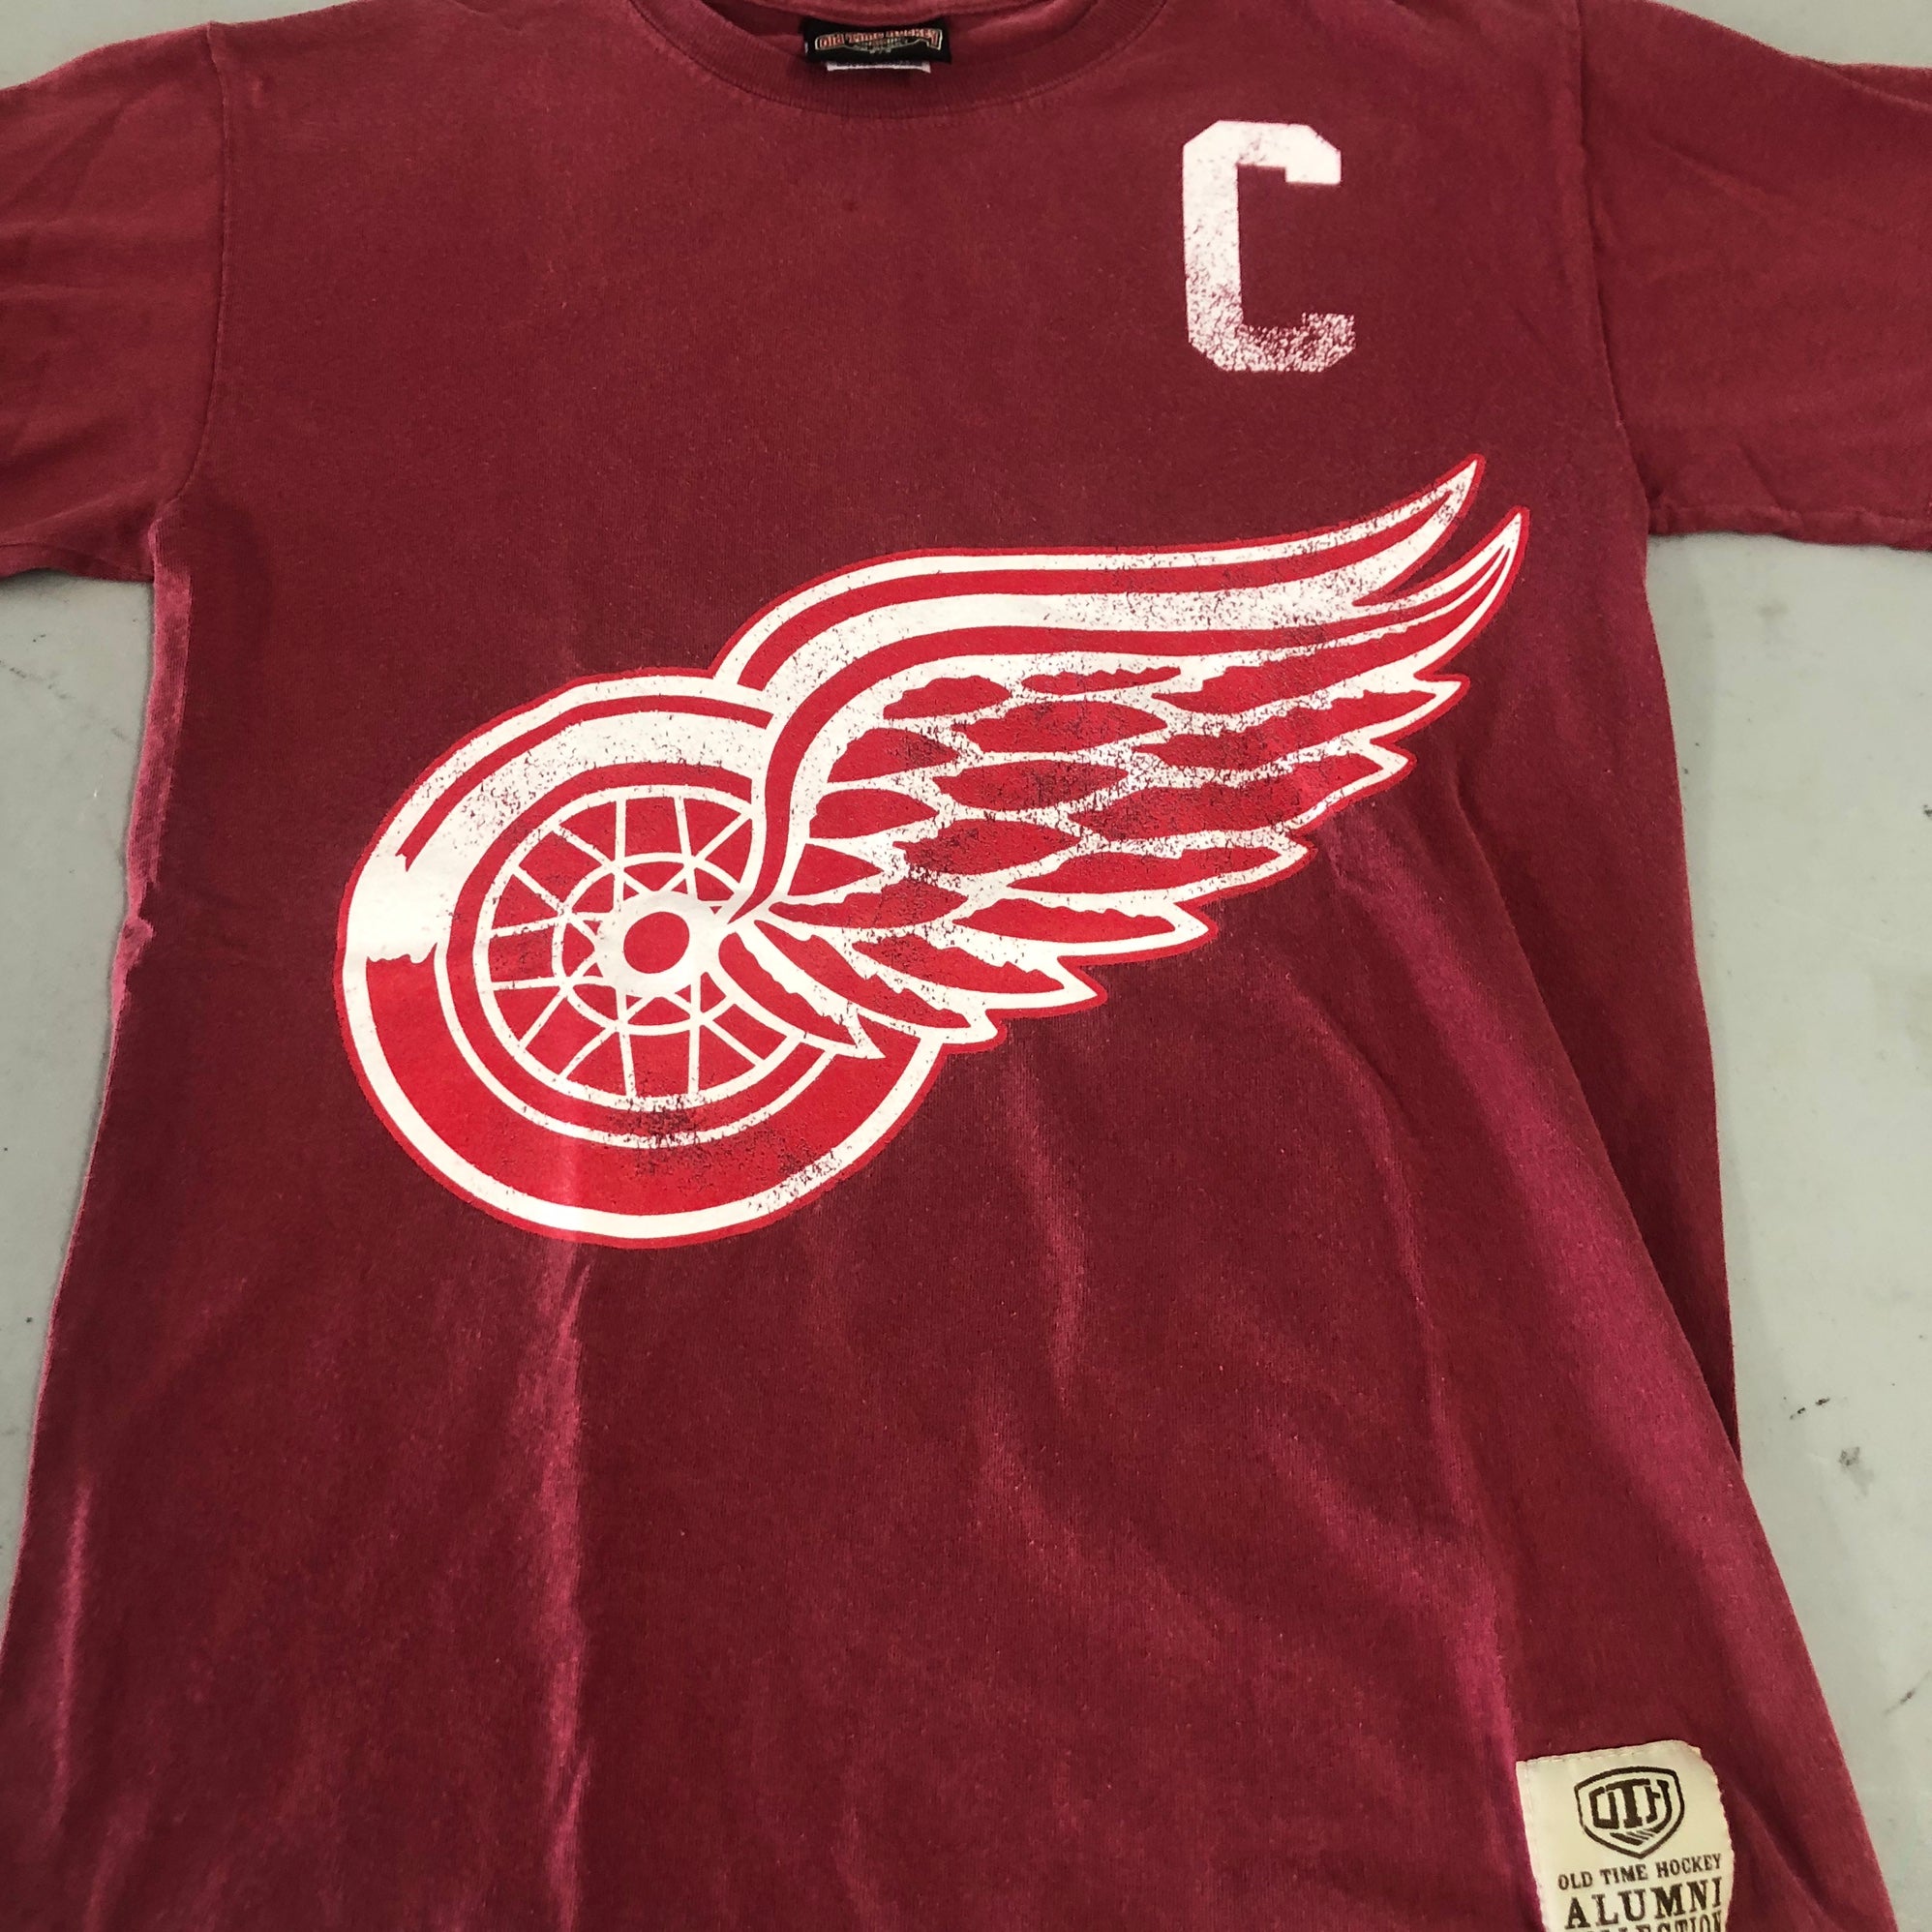 Gordie Howe Shirt  Detroit Red Wings Gordie Howe T-Shirts - Red Wings Store